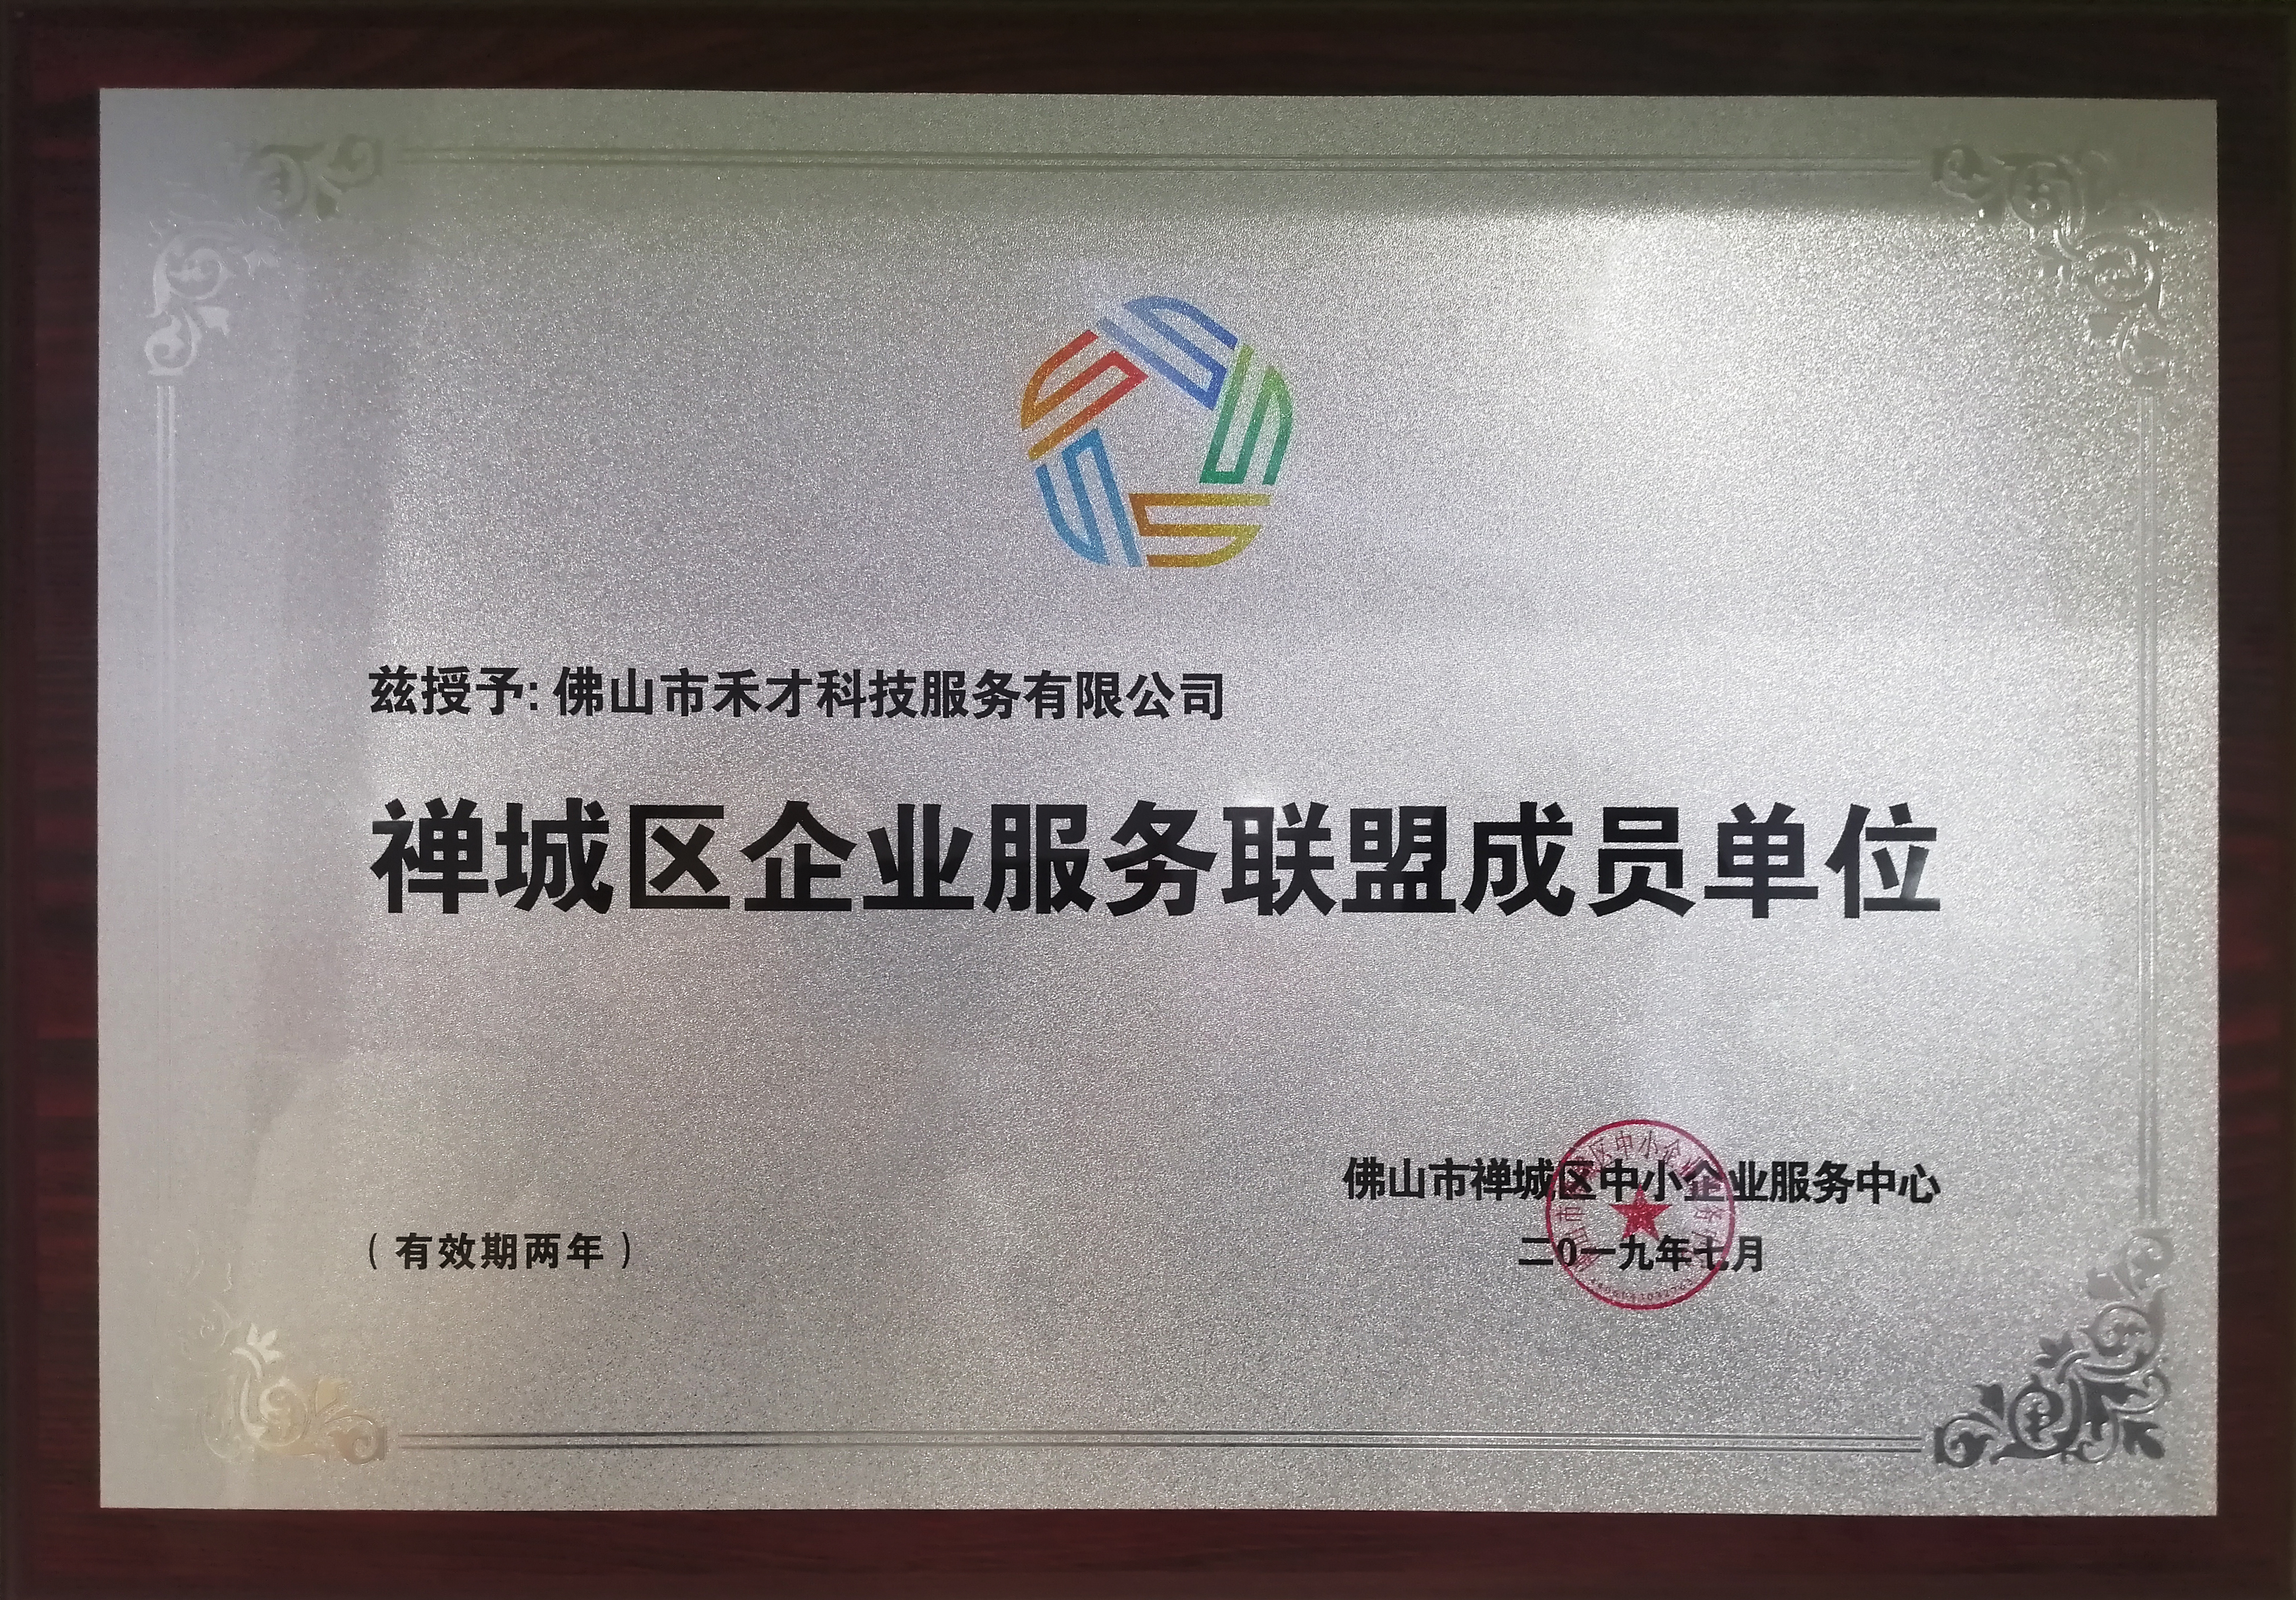 简讯：禾才入选“禅城区企业服务联盟” ，助力区内企业高质量发展